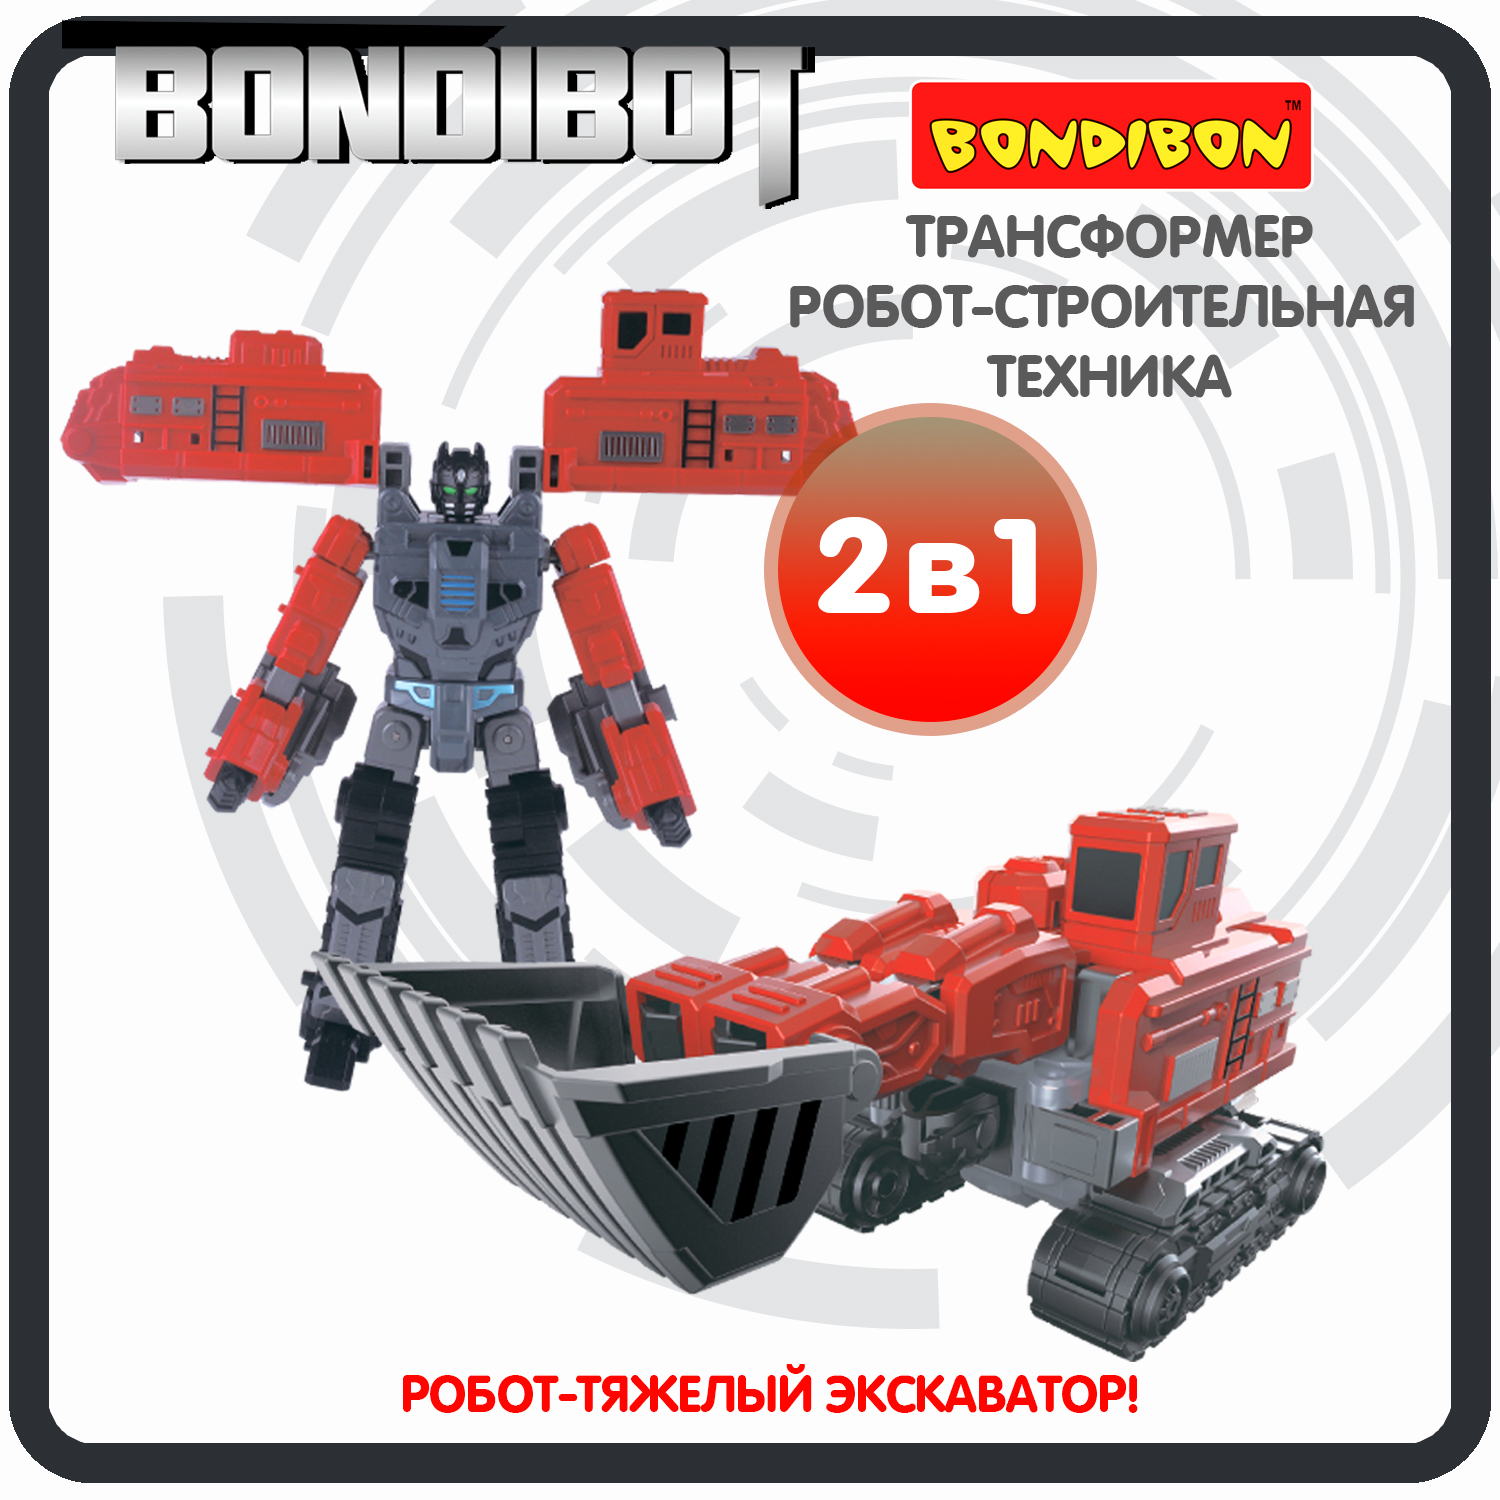 Трансформер робот-строительная техника, 2в1 BONDIBOT Bondibon, тяжёлый экскаватор / ВВ6057 bondibon трансформер bondibot 2 в 1 робот экскаватор